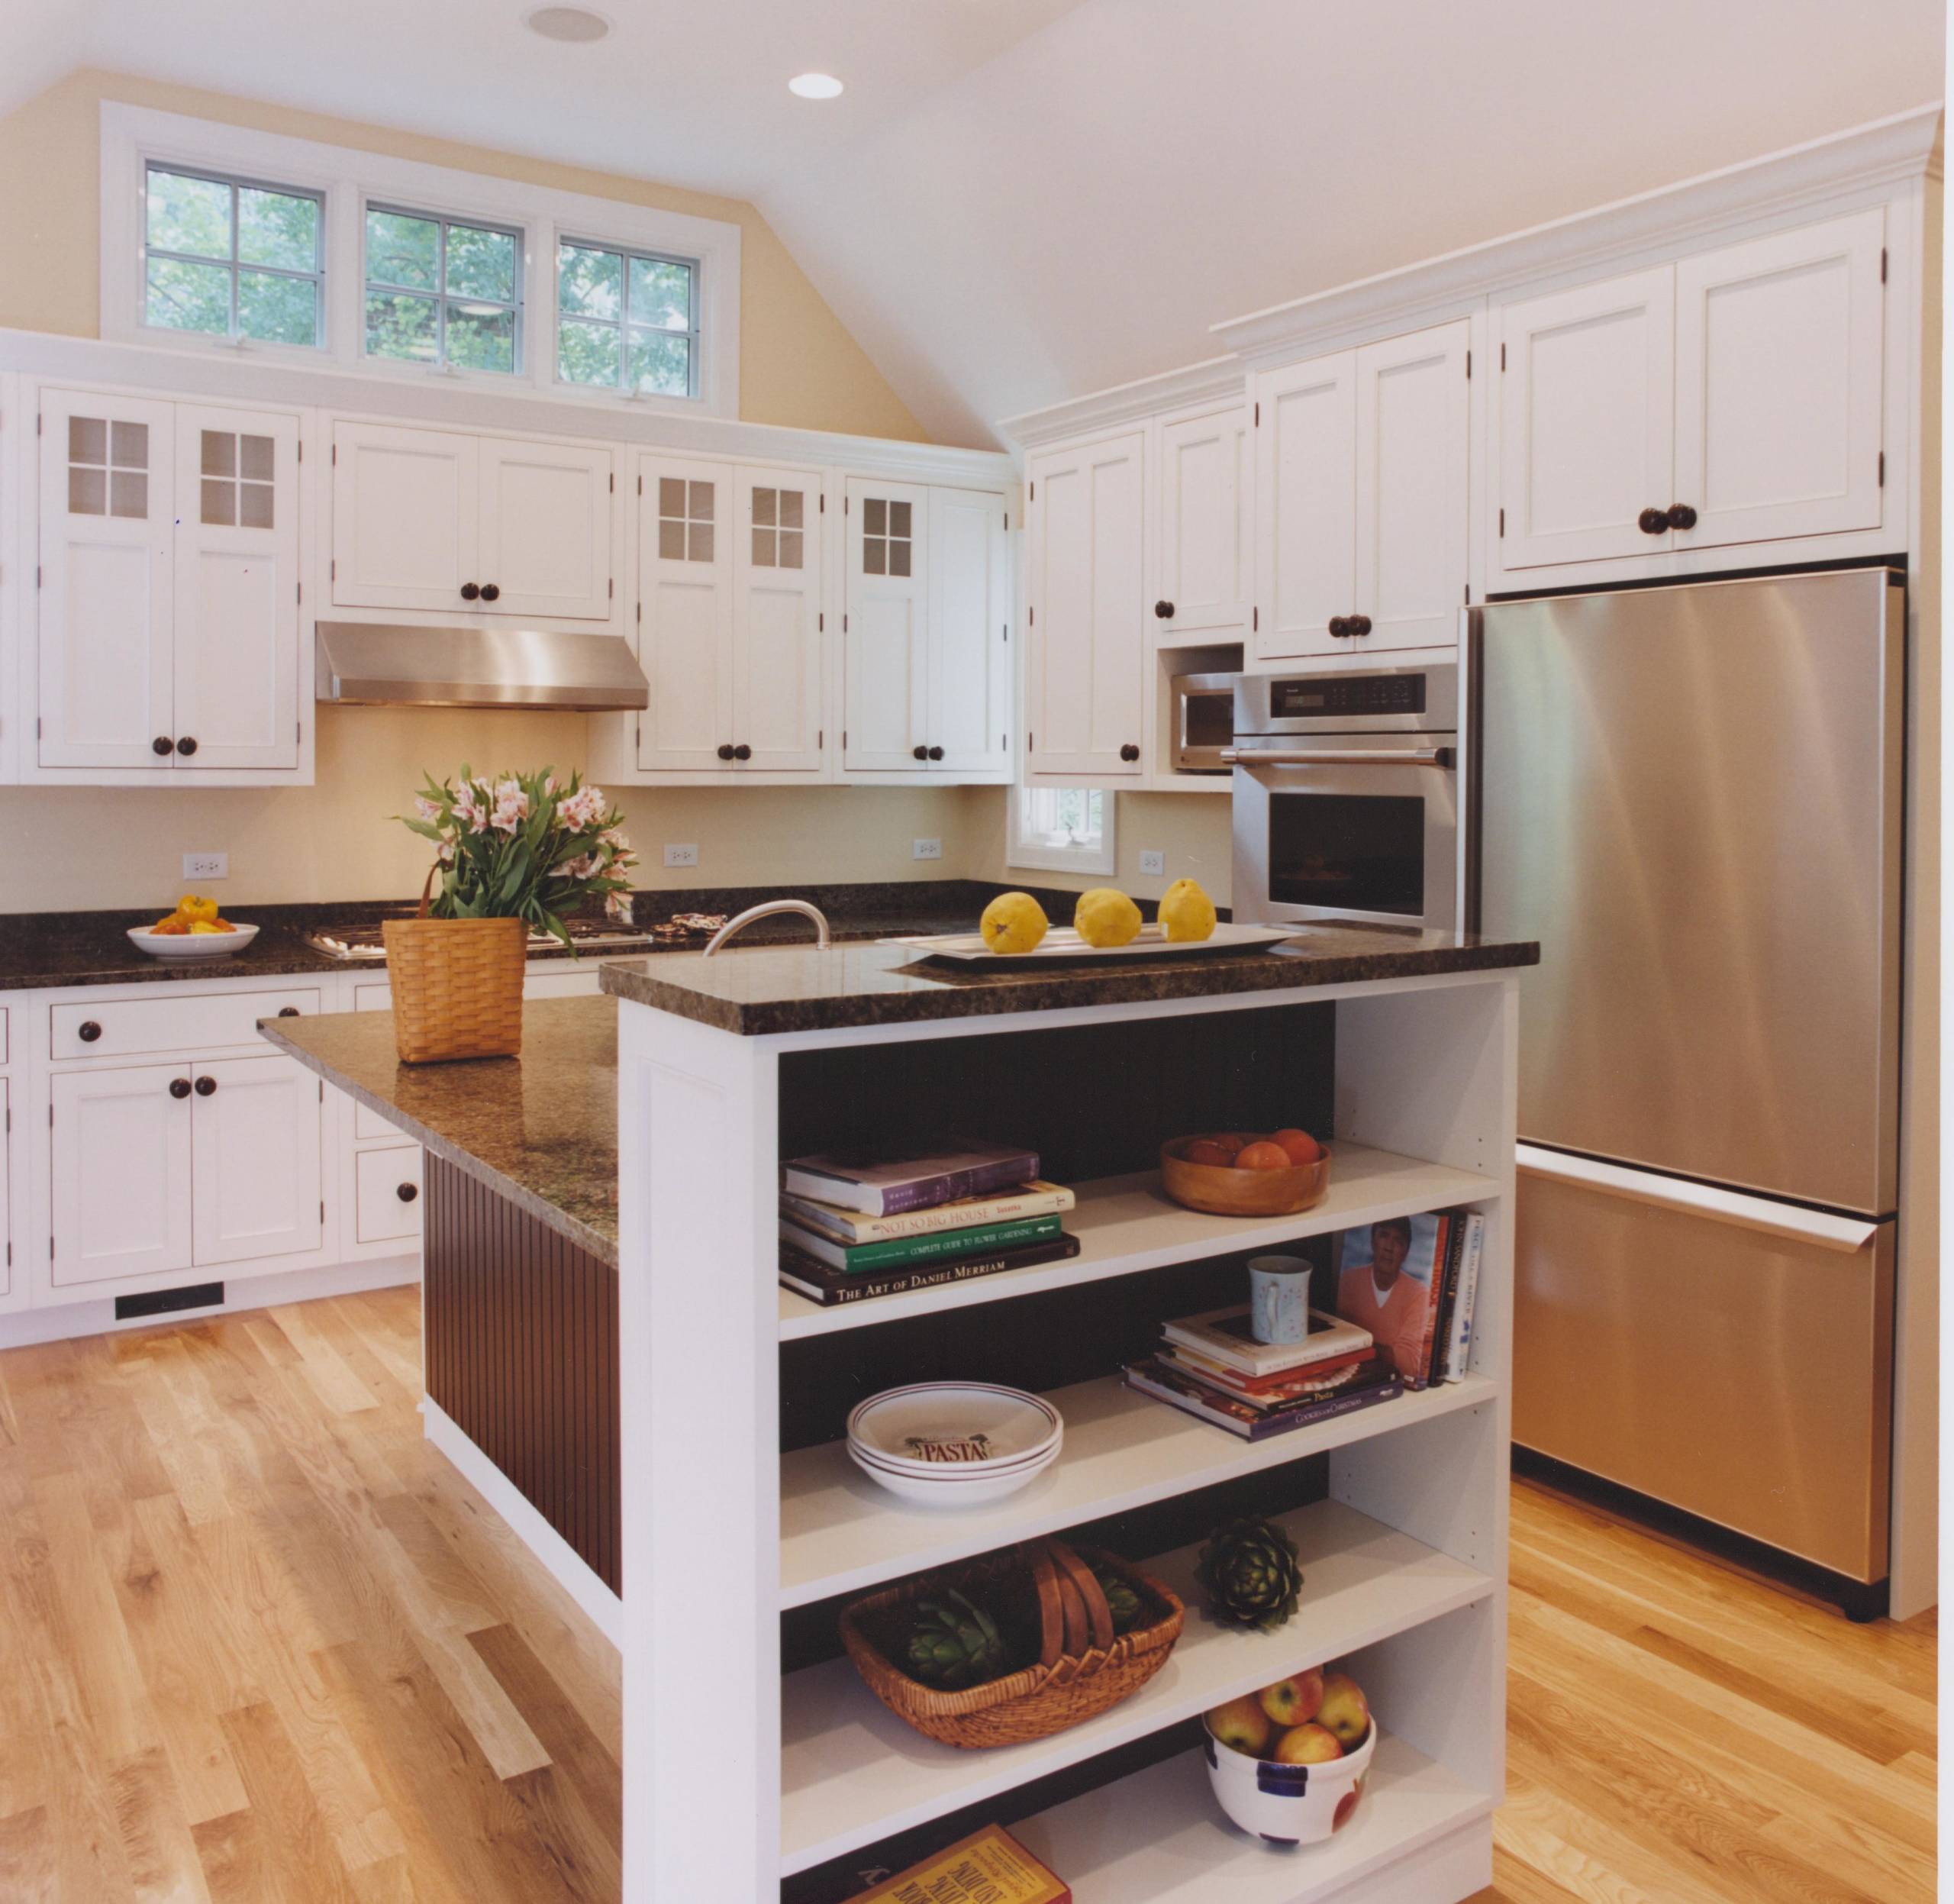 Kitchen Design Ideas For Square Room : 55 Small Kitchen Ideas Brilliant